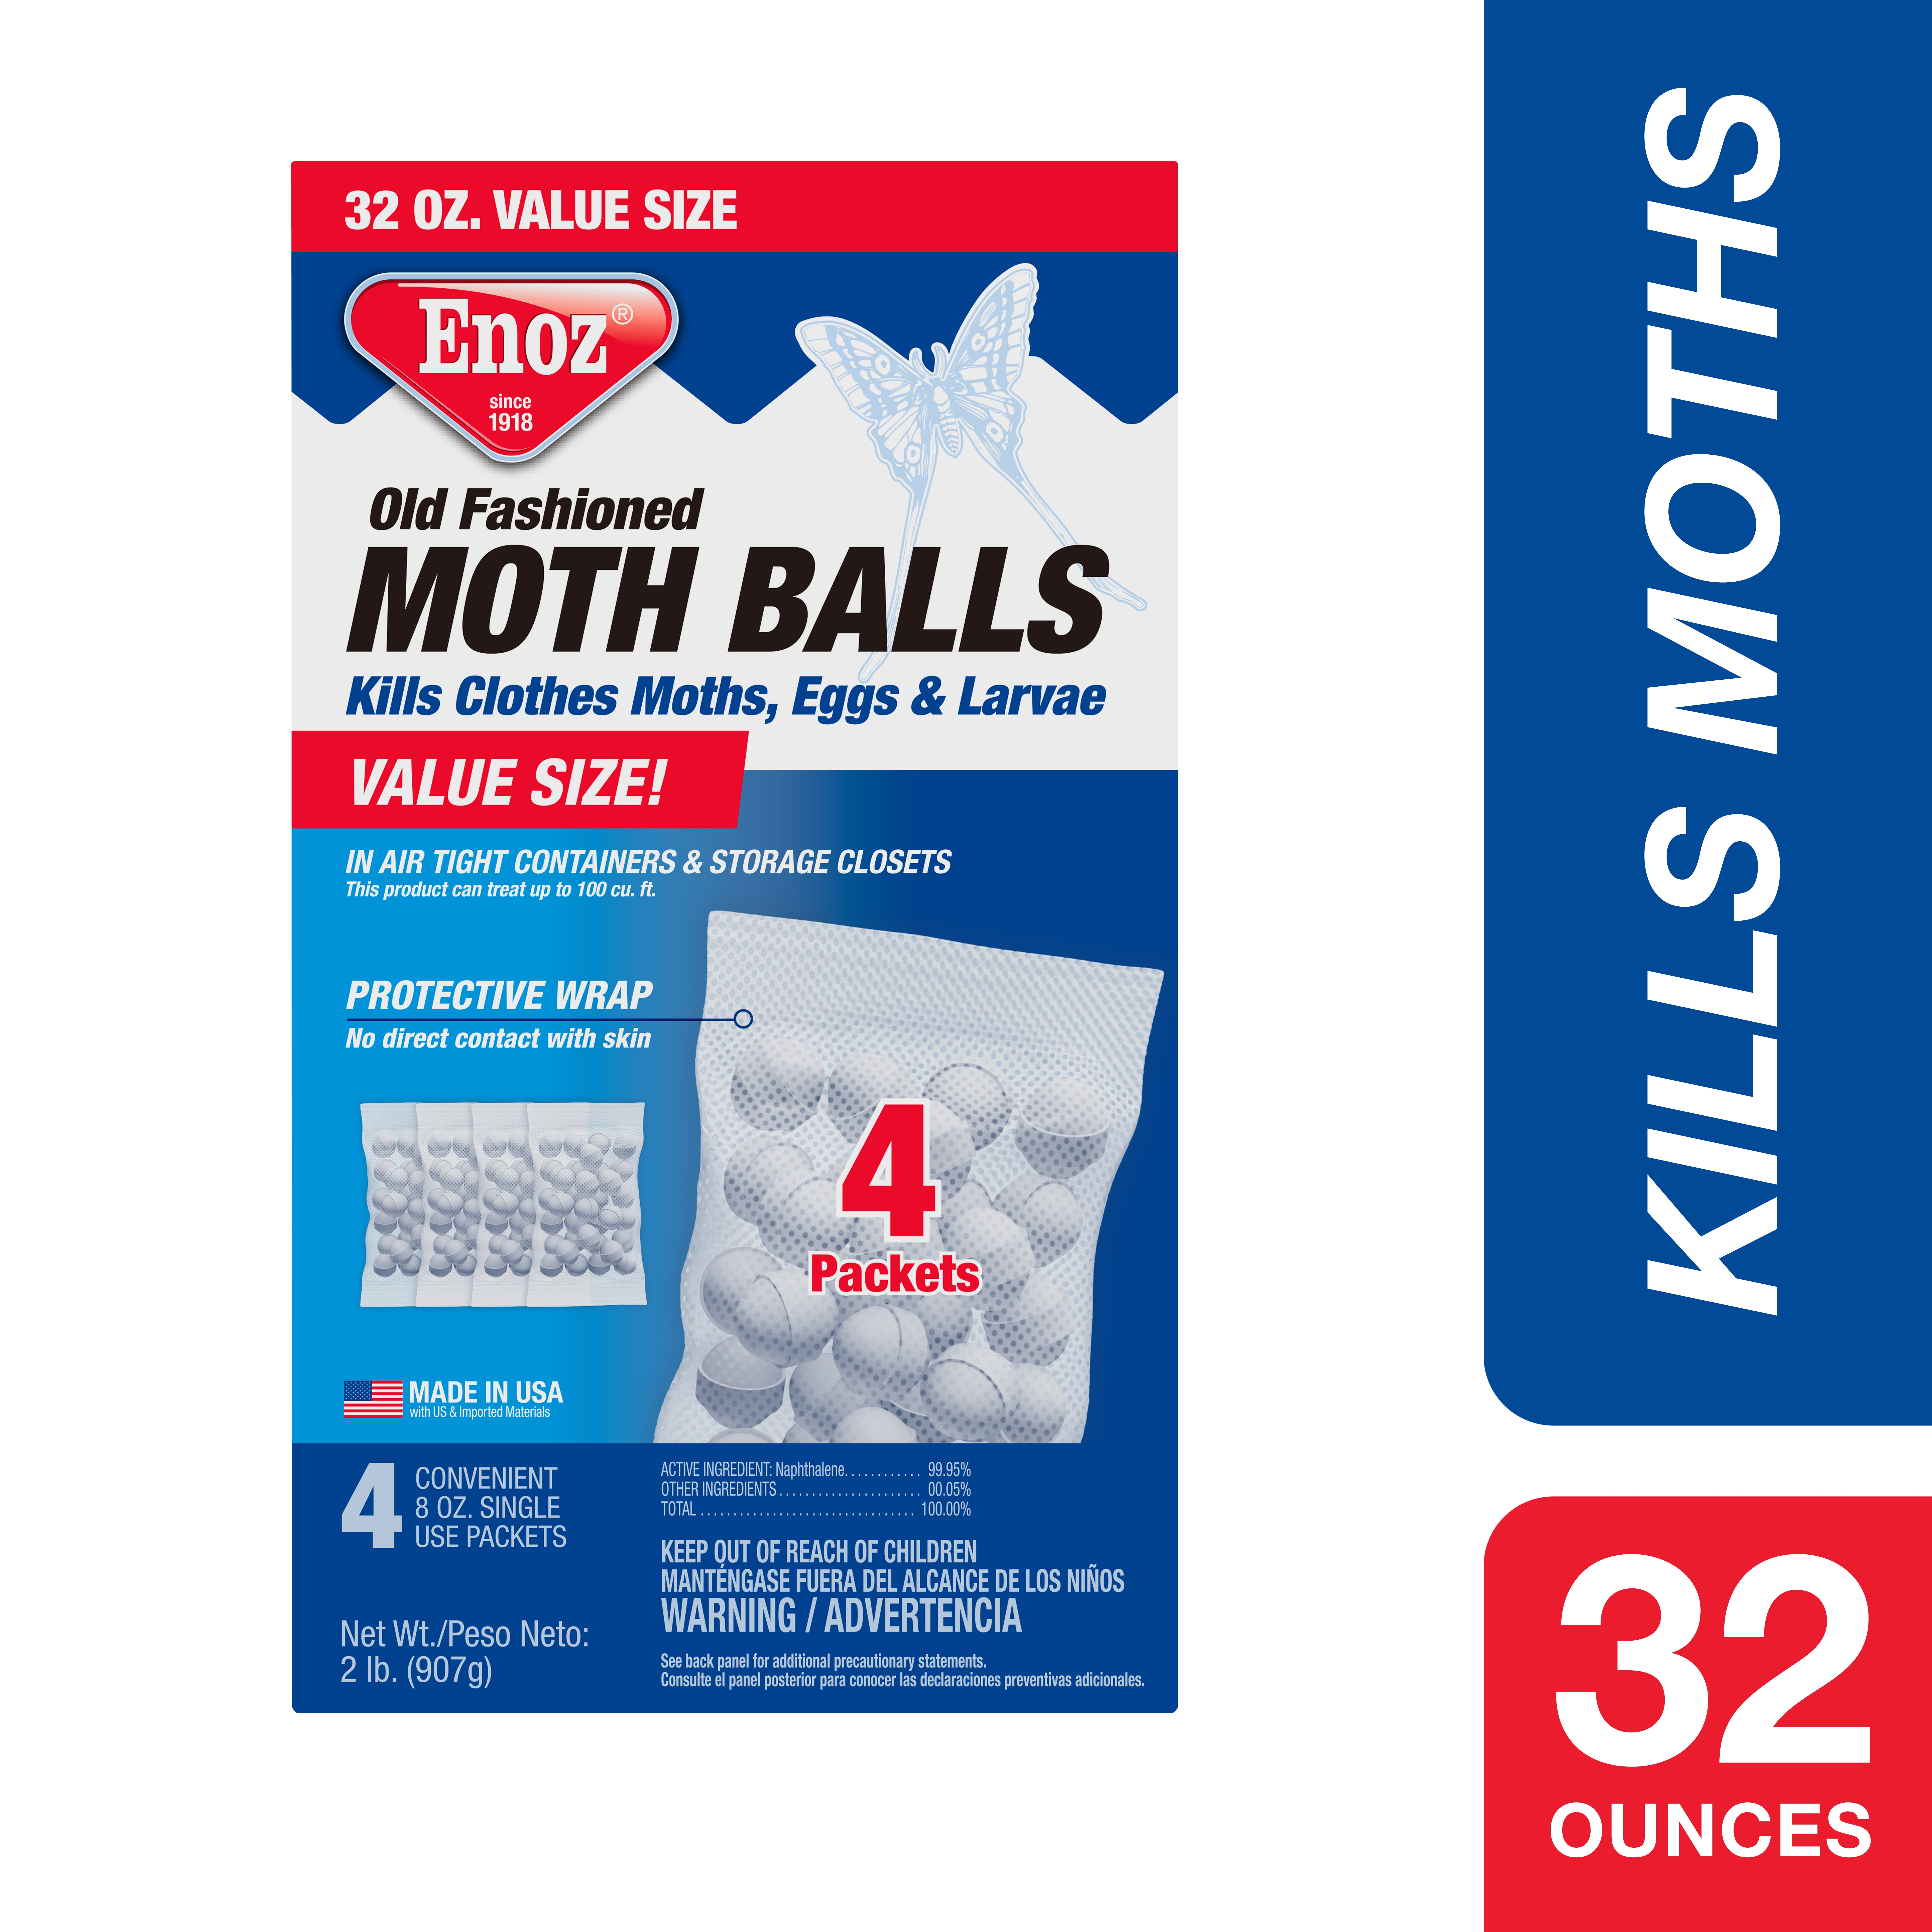 Enoz Old Fashioned Moth Balls, 32 oz, 4 Single Use 8 oz Packets